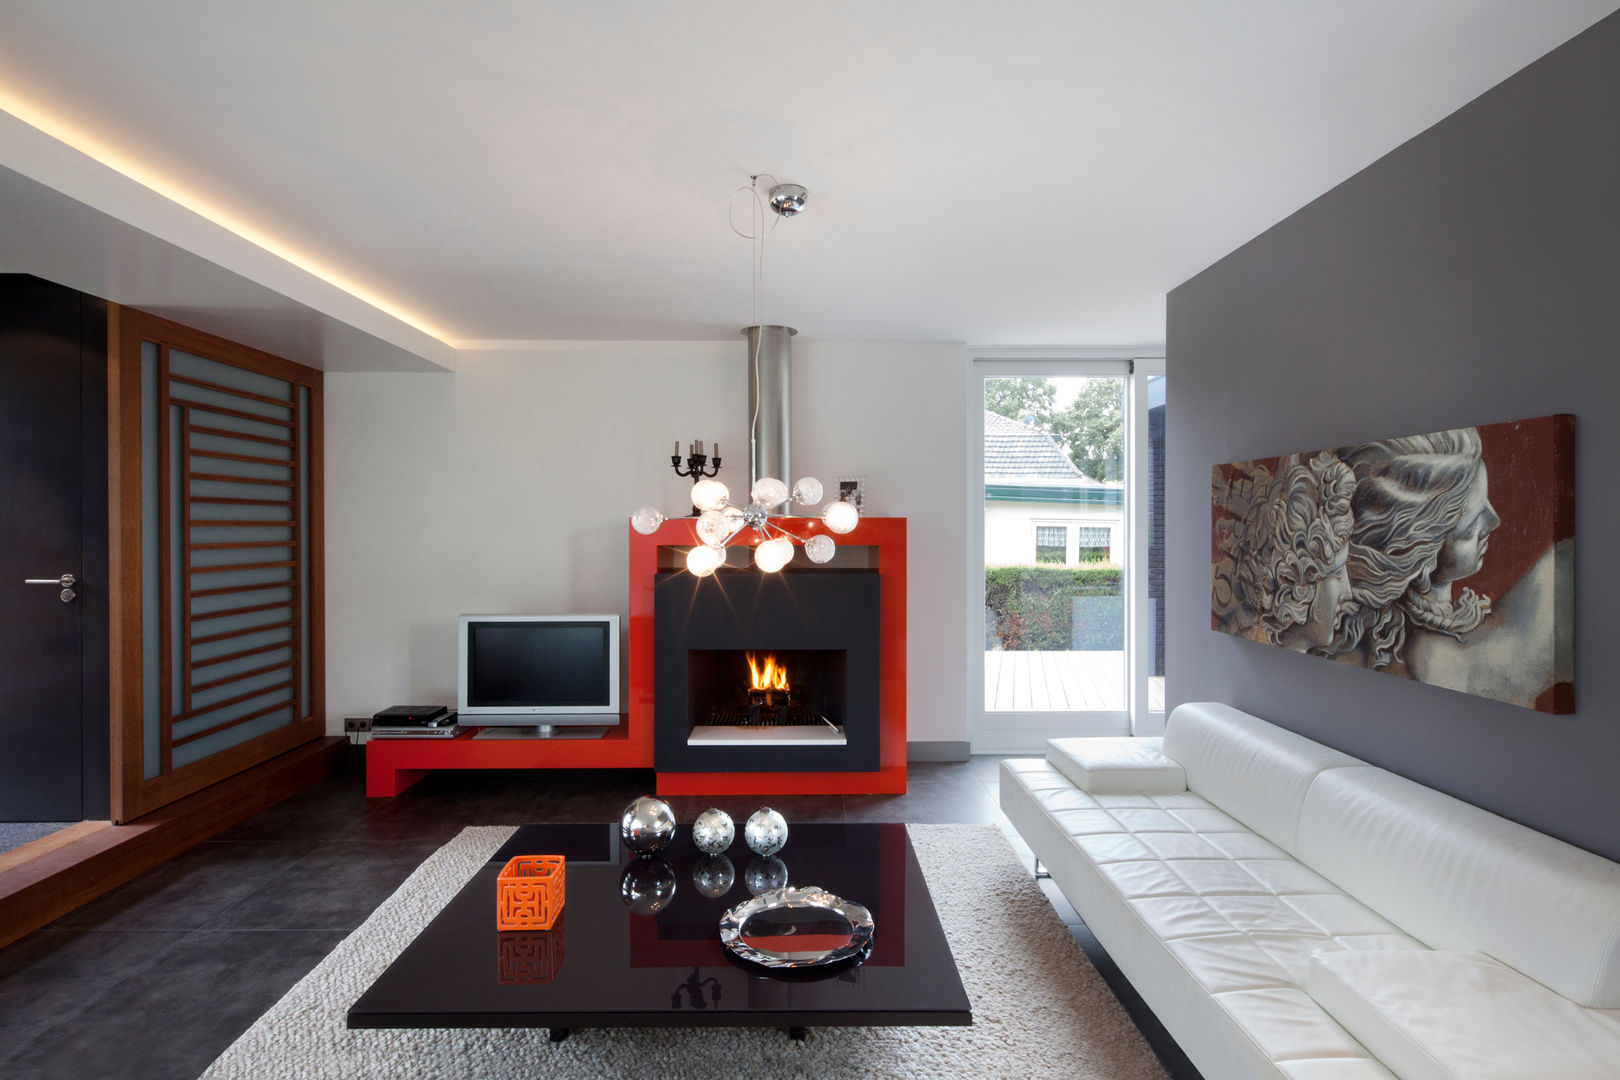 Omgeving & functionaliteit verbonden in een verbazingwekkende villa in Vinkeveen, MEF Architect MEF Architect Living room